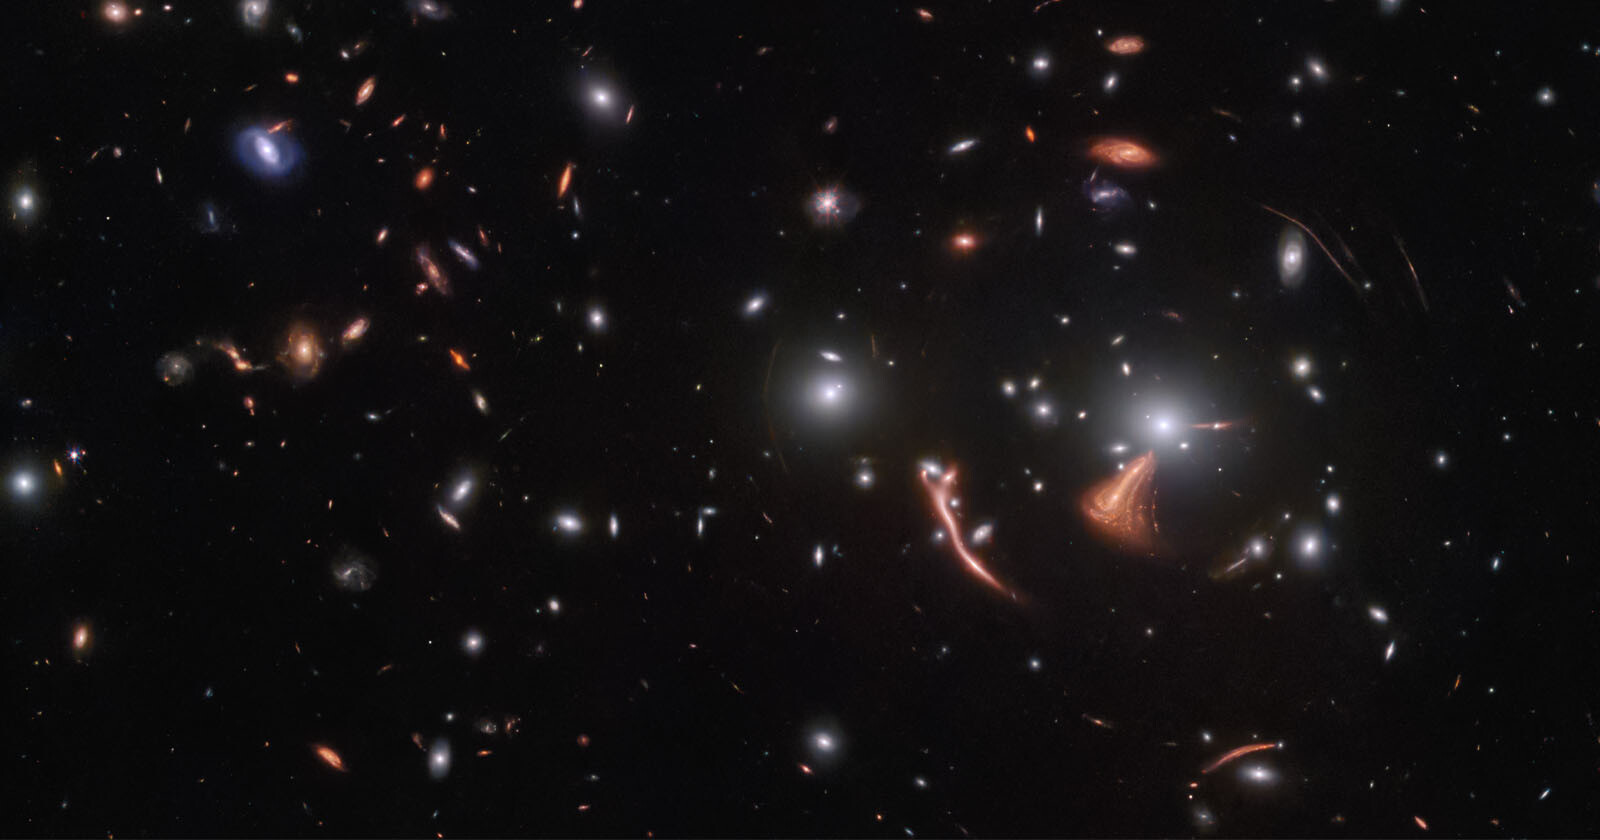 Webbs Cosmic Seahorse Photo Shows Gravity Bending Spacetime